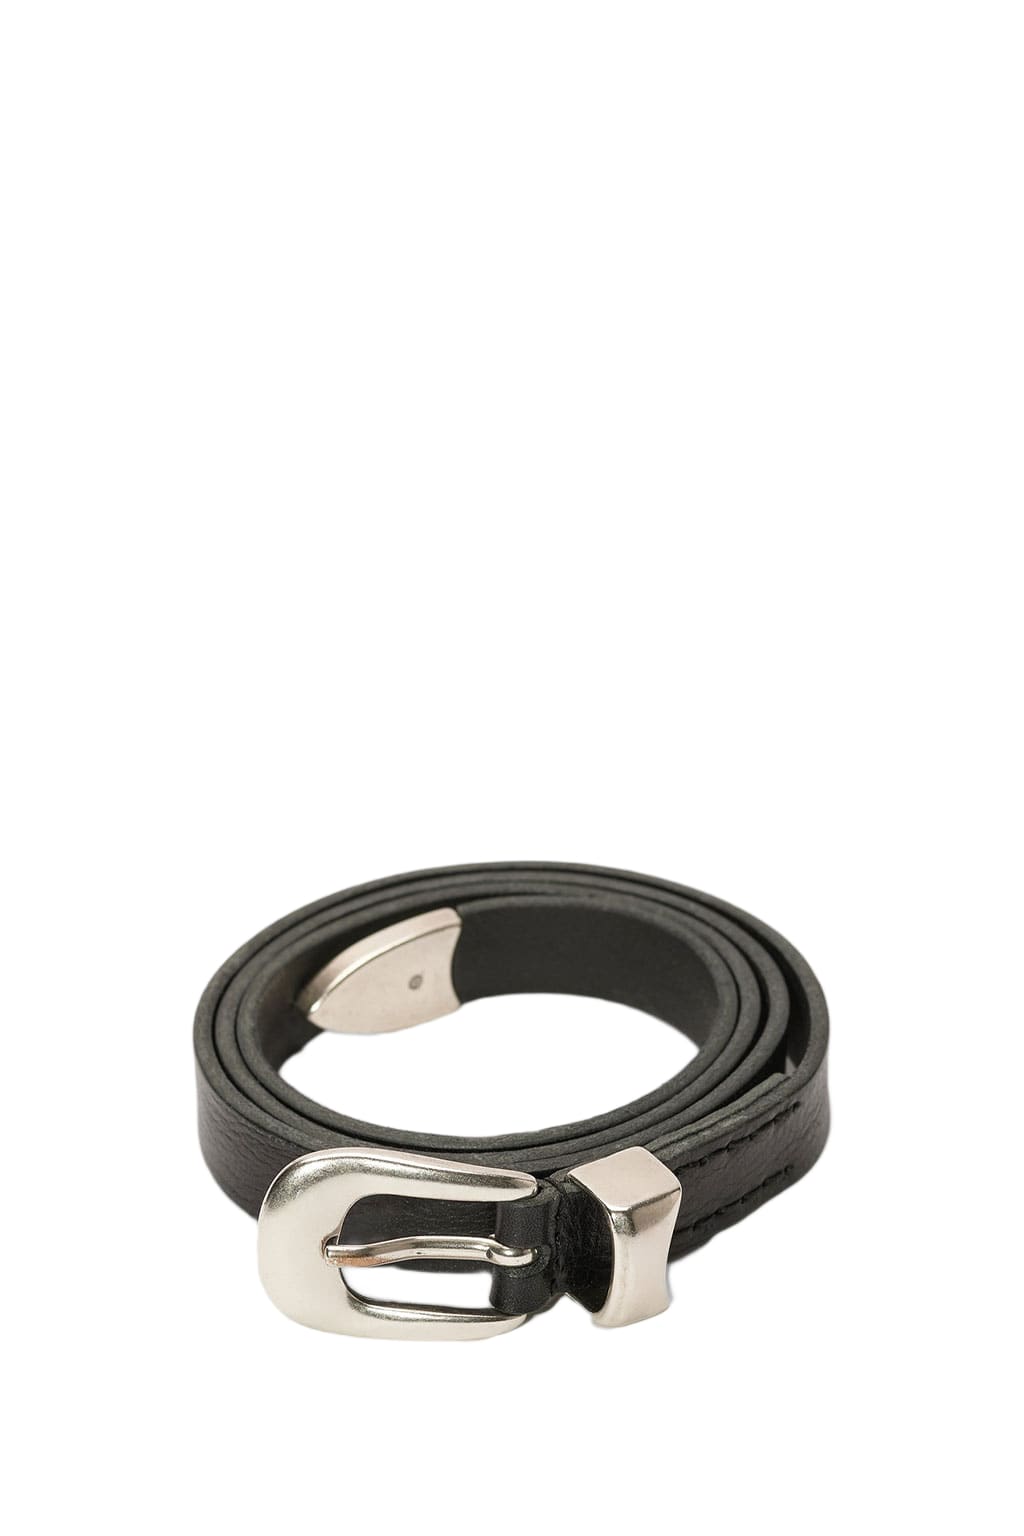 2 Cm Belt Black leather belt - 2 cm belt